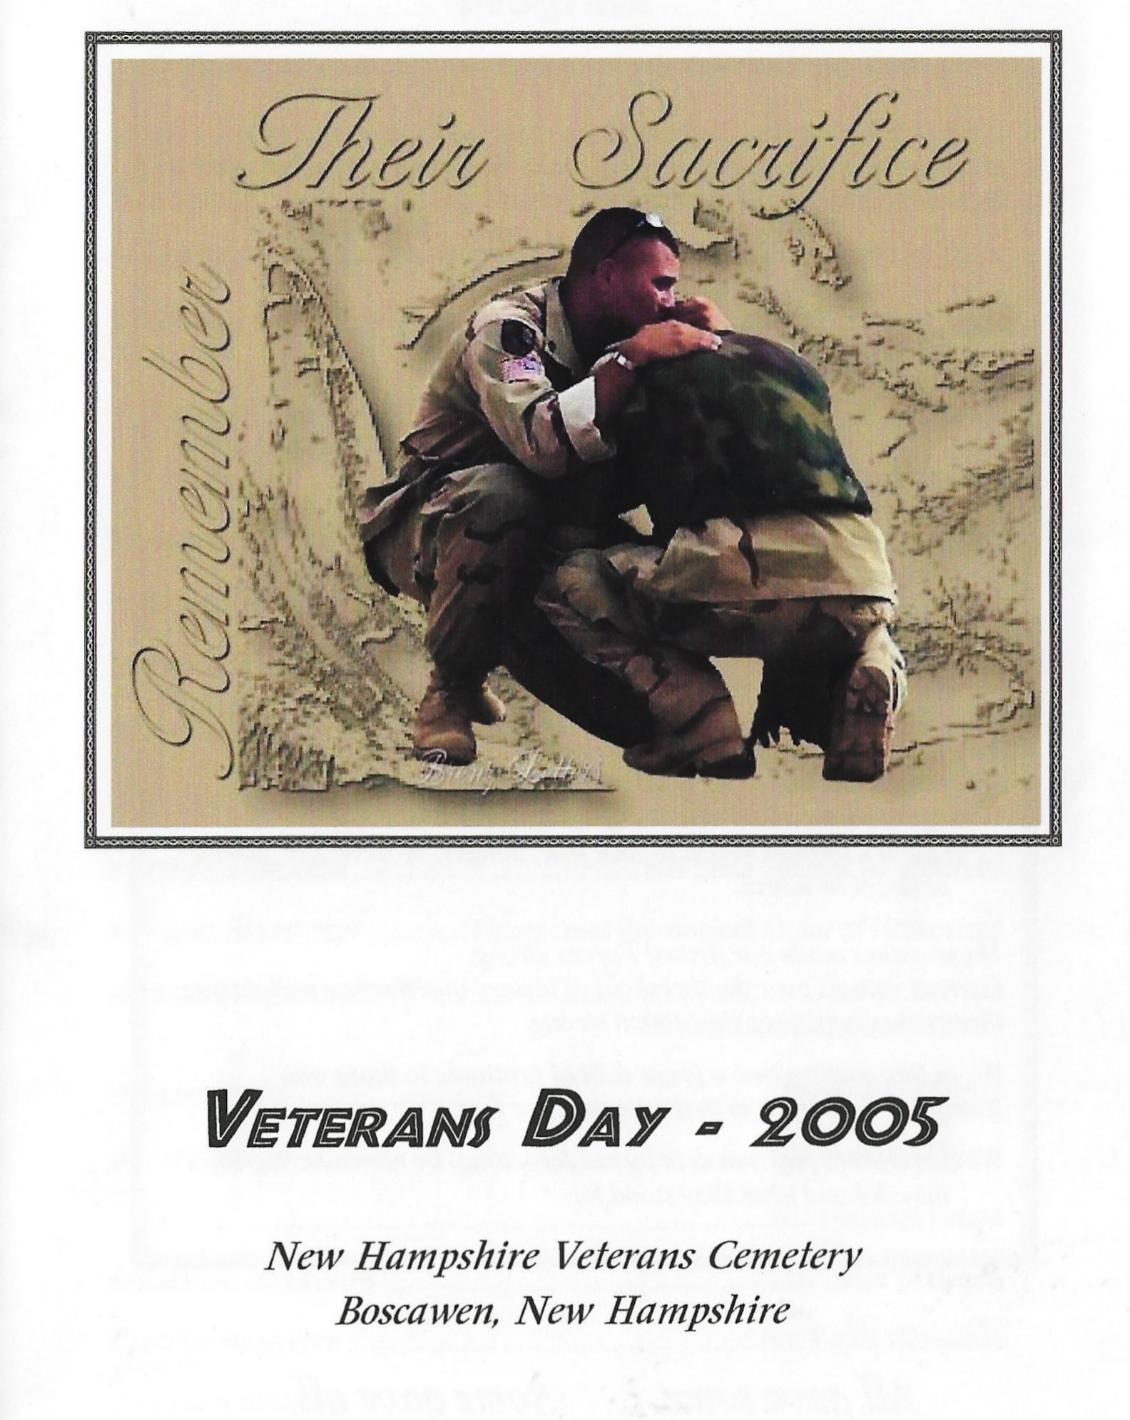 Veterans Day Program - November 11 2005 NH State Veterans Cemetery